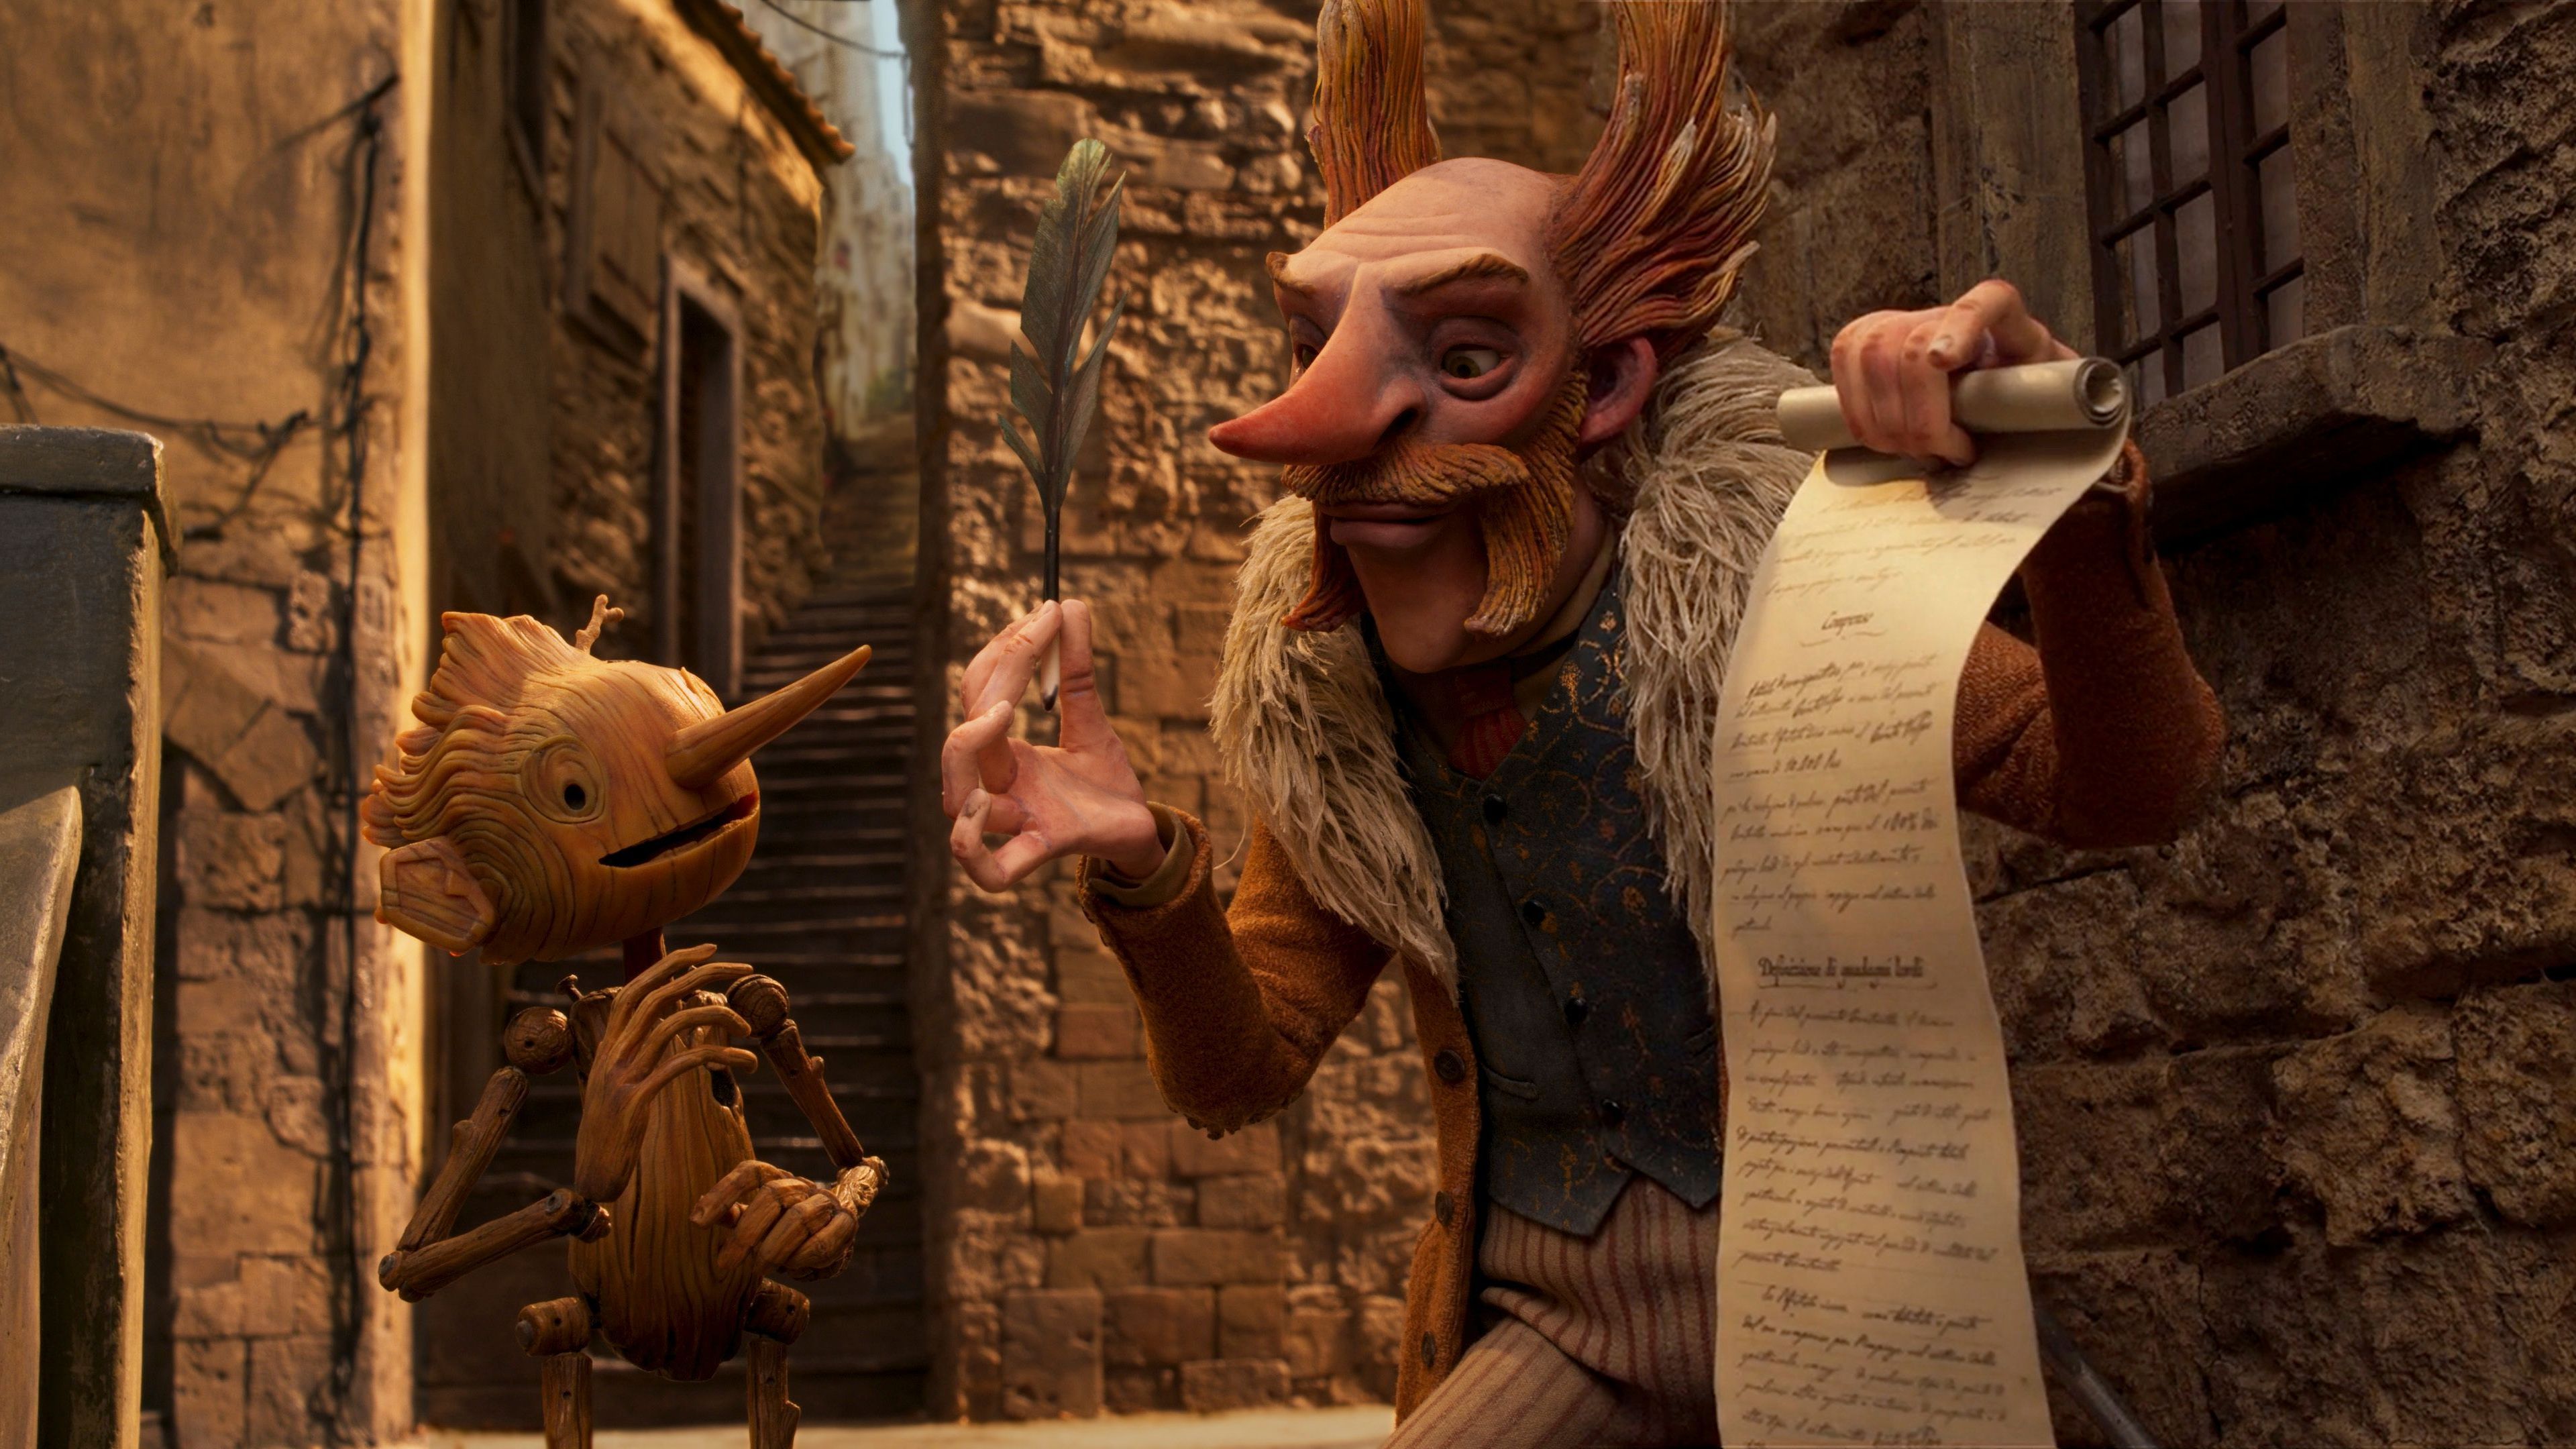 Der Oscar für den besten Animationsfilm geht 2023 an&nbsp;"Guillermo del Toro's Pinocchio".&nbsp;